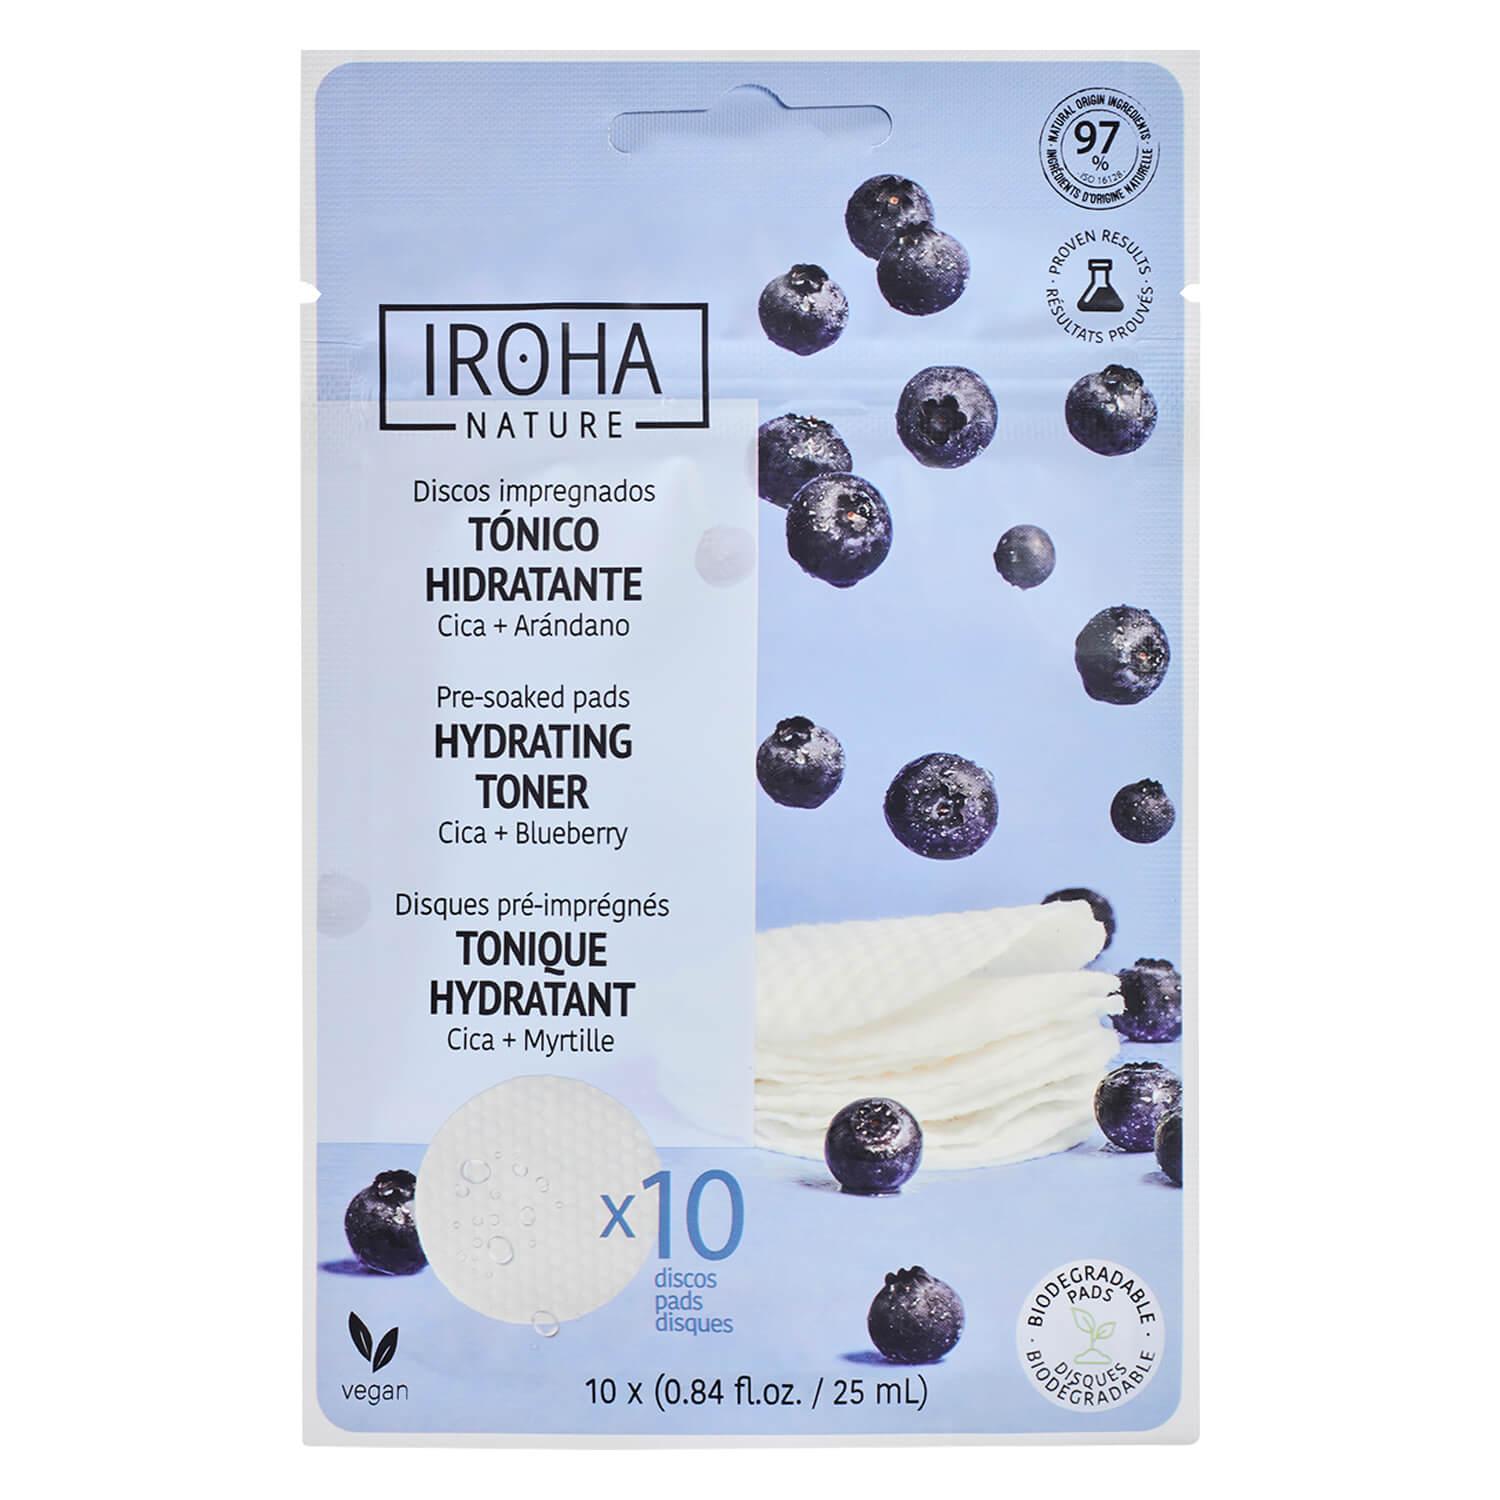 Iroha Nature - Hydrating Toner Pads